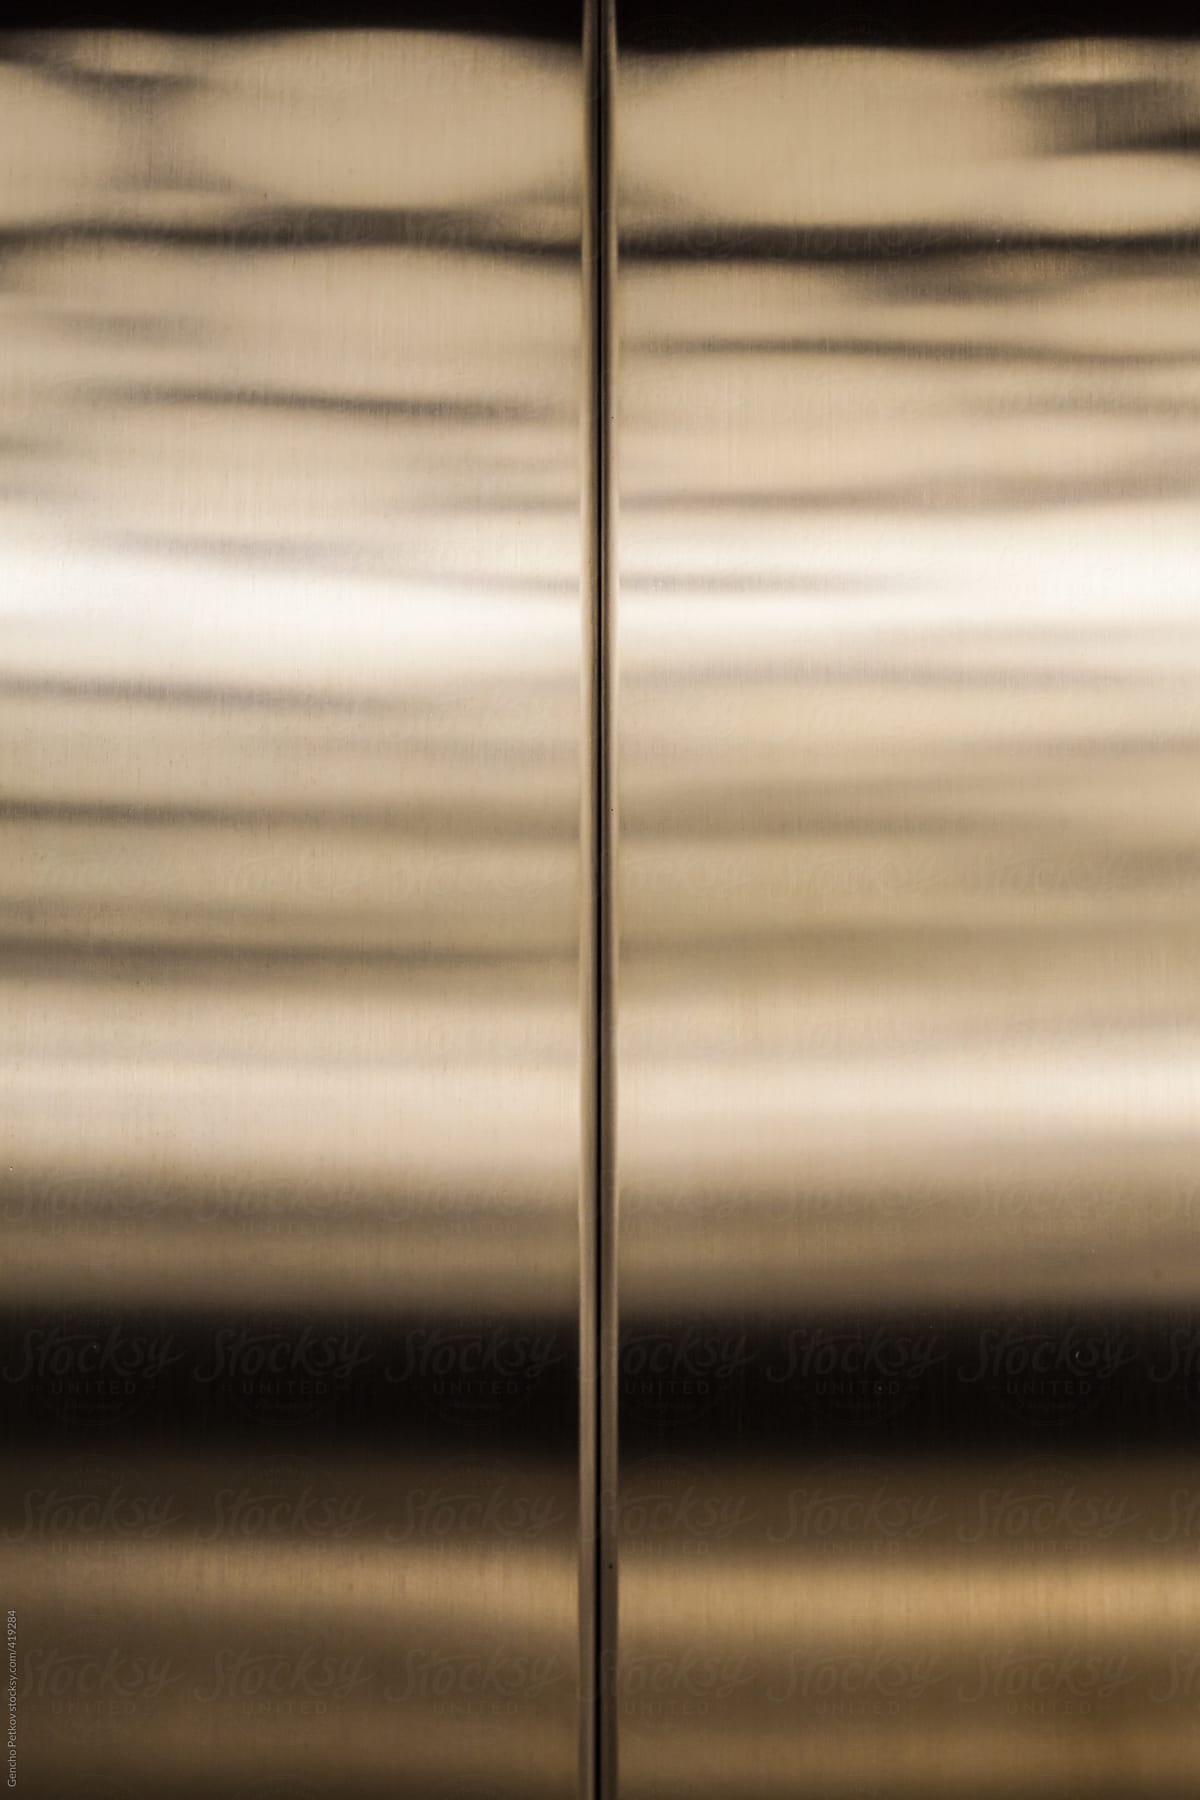 Metal reflections in elevator door